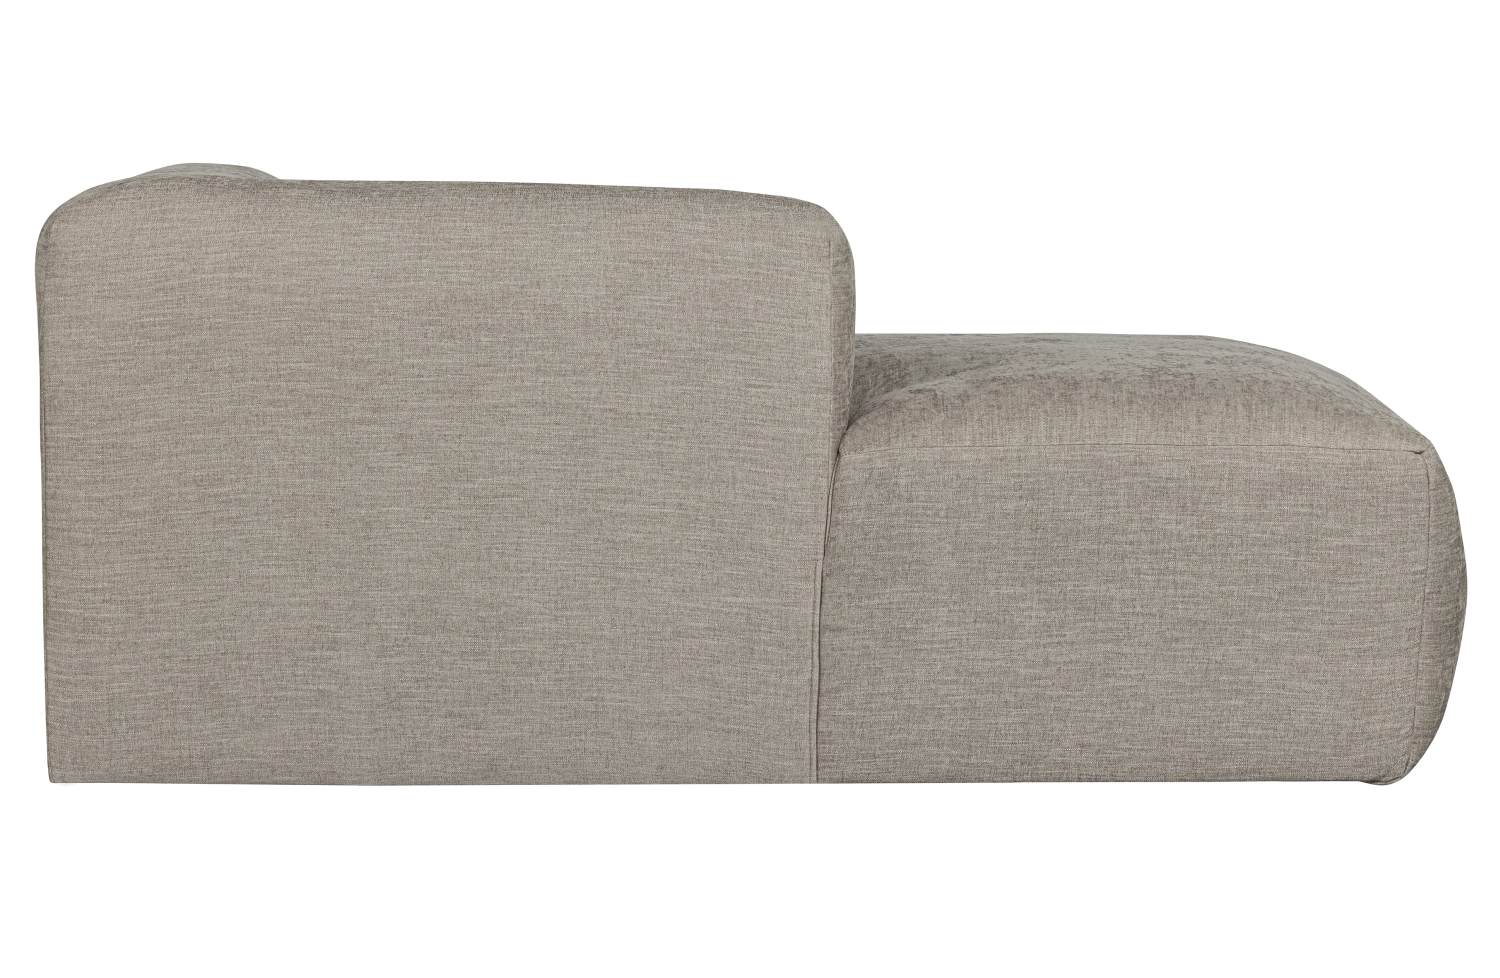 Das Modulsofa Yent als Chaise-Longue überzeugt mit seinem modernen Design. Gefertigt wurde es aus Webstoff, welcher einen hellgrauen Farbton besitzt. Das Sofa ist in der Ausführung Rechts. Die Sitzhöhe des Sofas beträgt 47 cm.